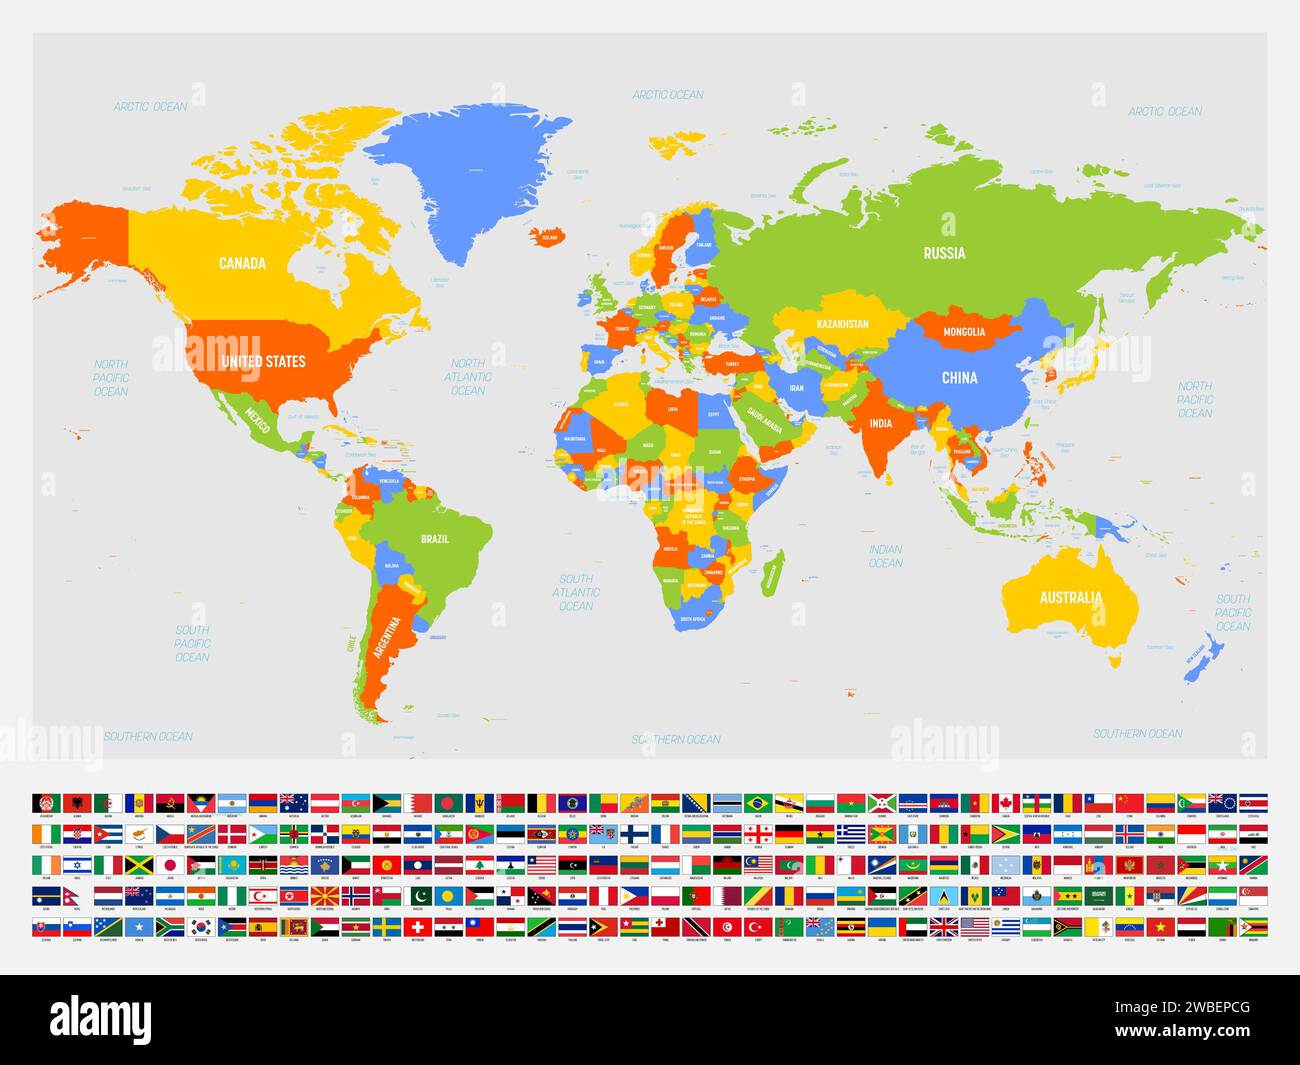 Carte politique colorée du monde avec des étiquettes de pays et d'eau. Avec ensemble de drapeaux nationaux des pays sous la carte. Illustration vectorielle. Illustration de Vecteur